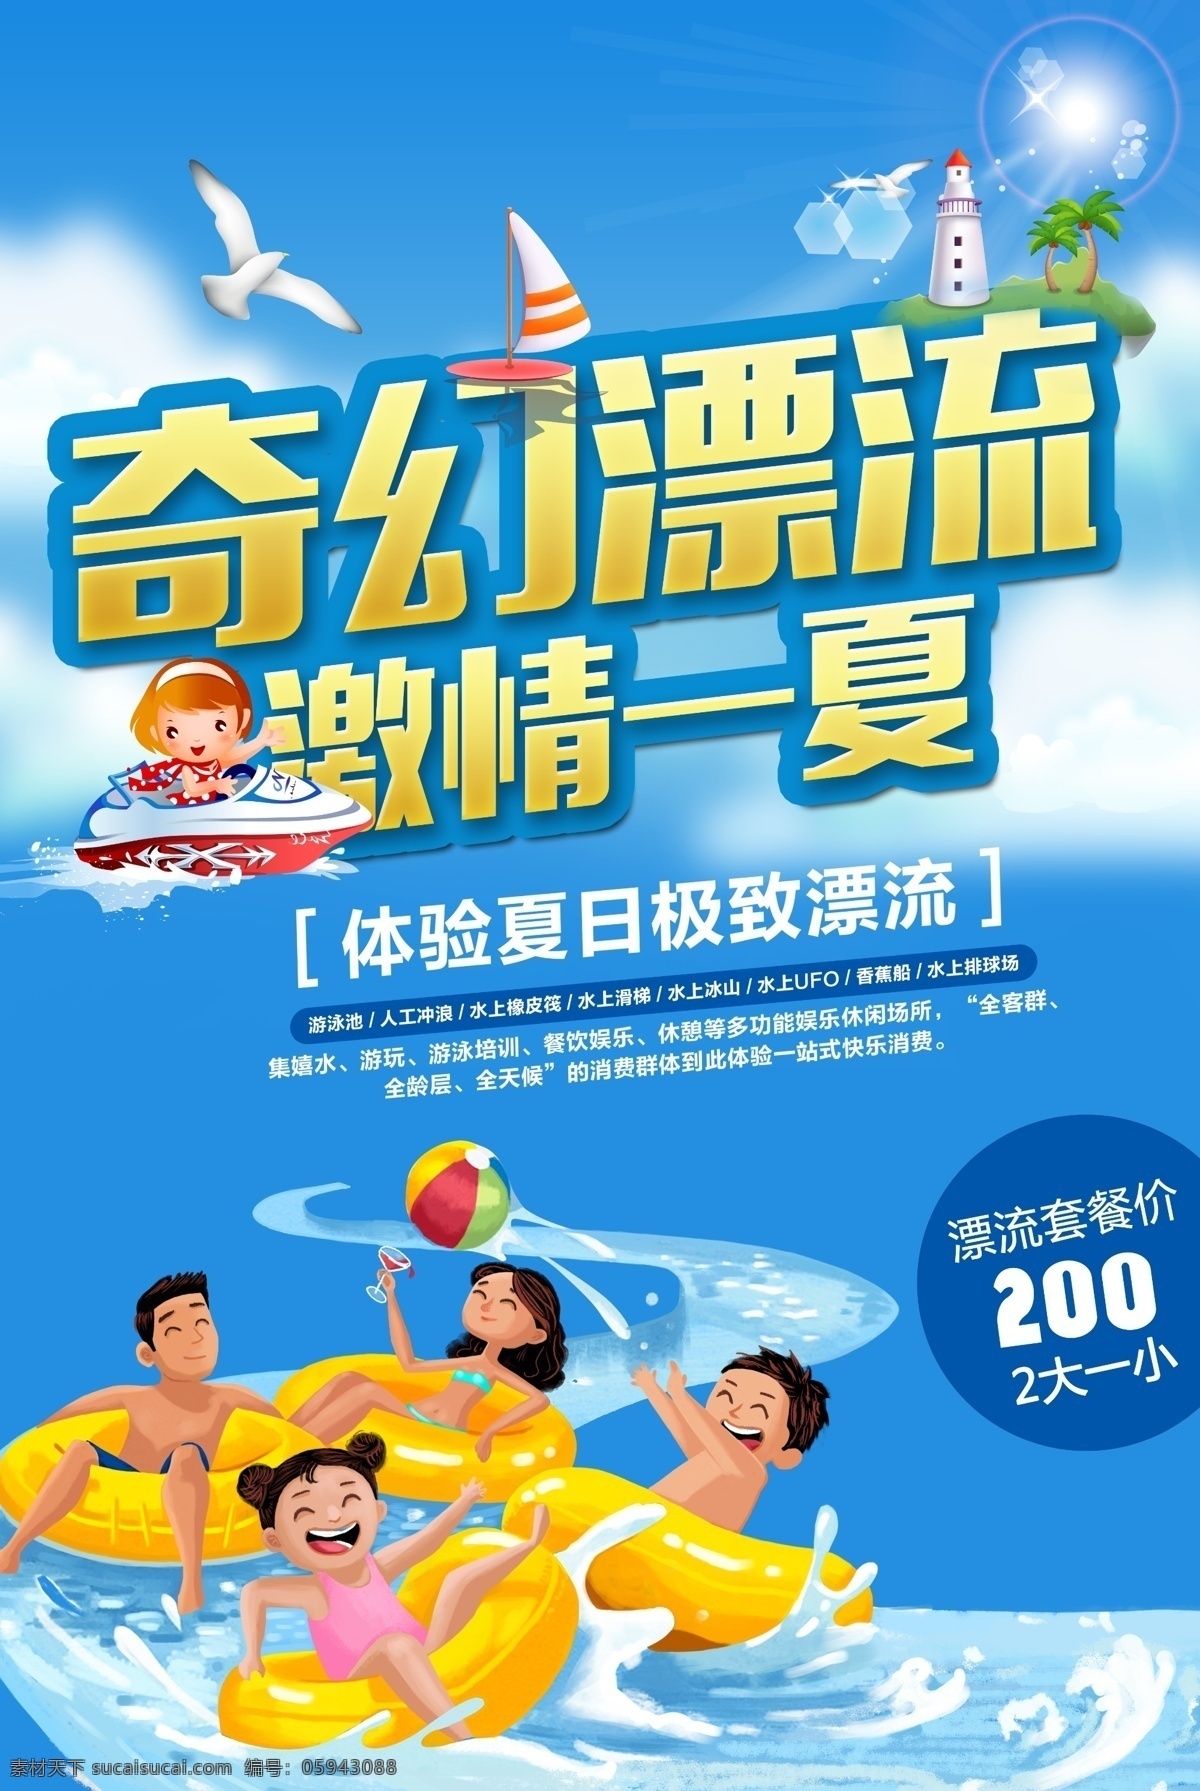 奇幻漂流 奇幻 漂流 旅游 插画 夏季 夏天 度假 水 蓝色 天空 海报